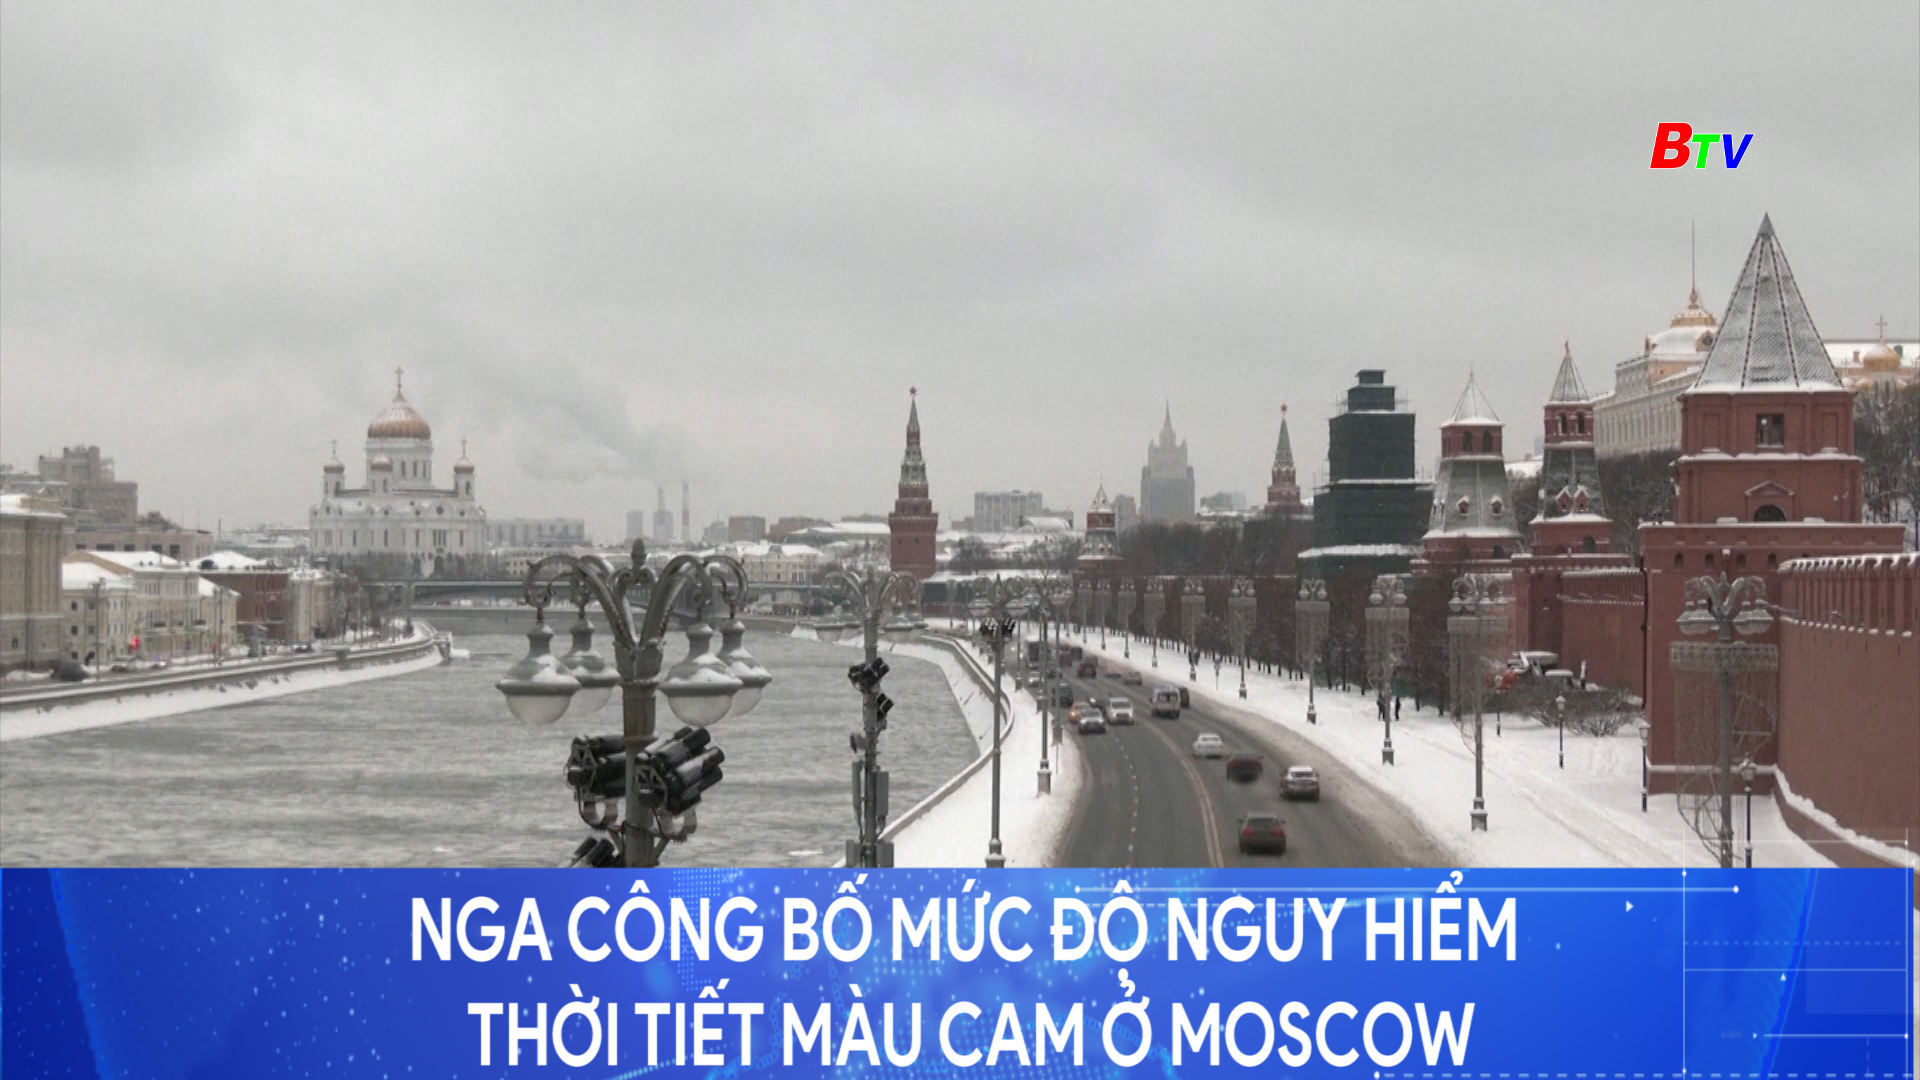 Nga công bố mức độ nguy hiểm thời tiết màu cam ở Moscow	